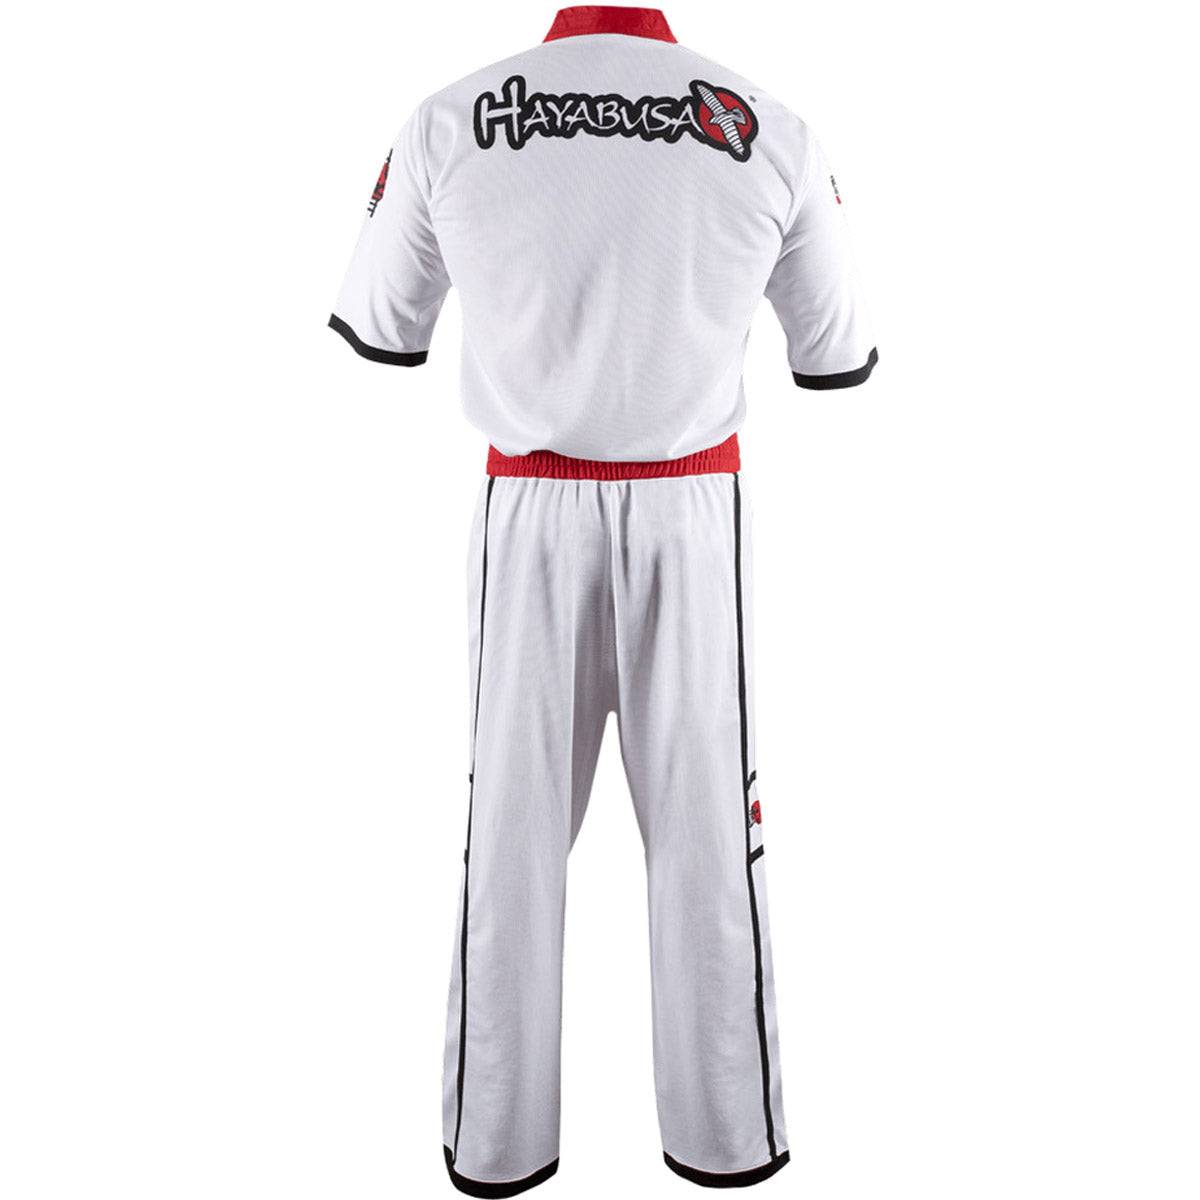 Hayabusa Winged Strike Youth Karate Uniform - Small - White Hayabusa